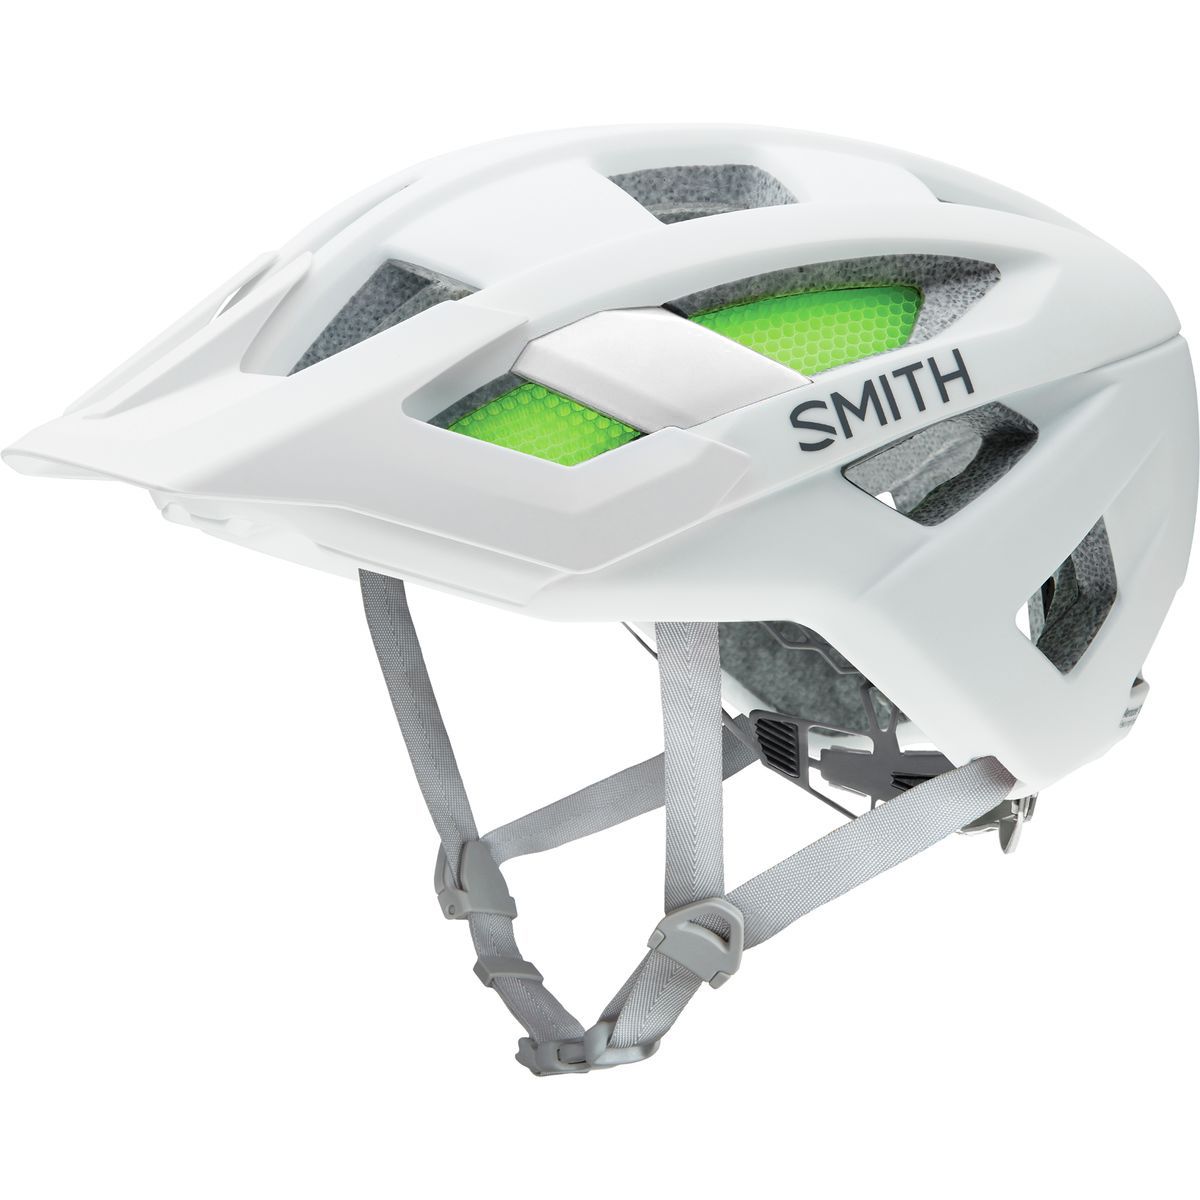 Smith Rover Helmet